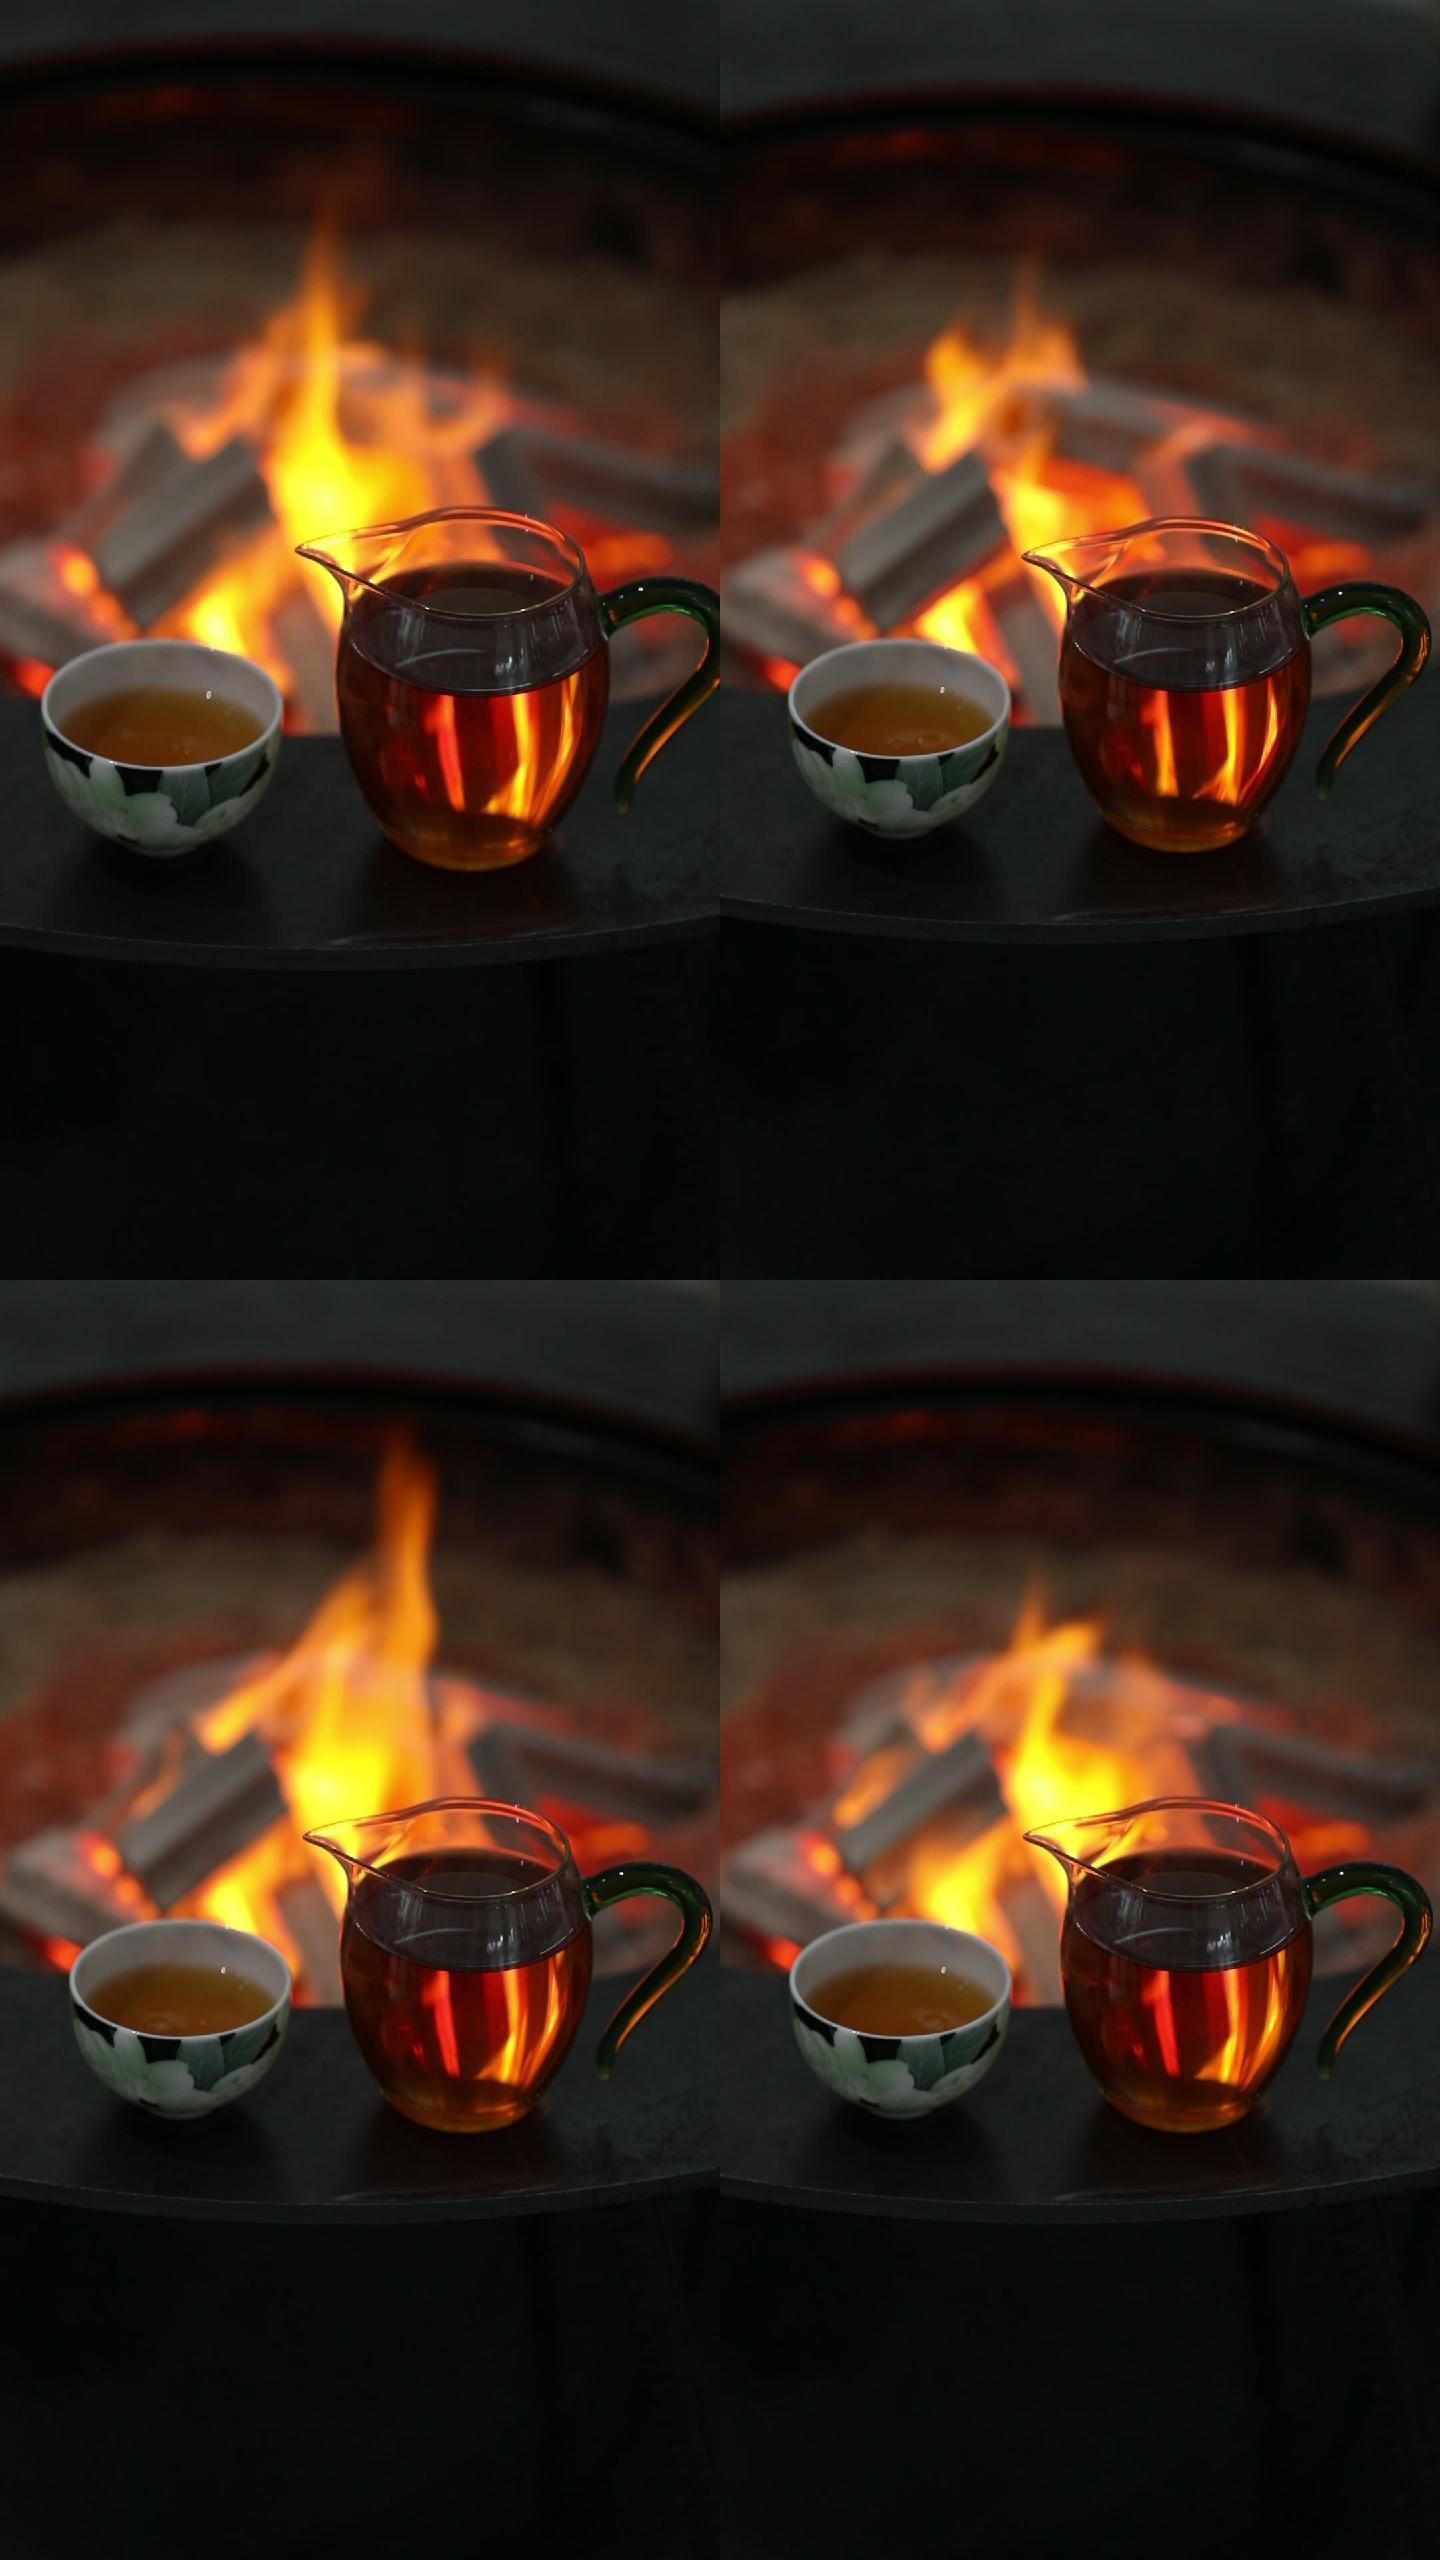 火炉旁倒茶